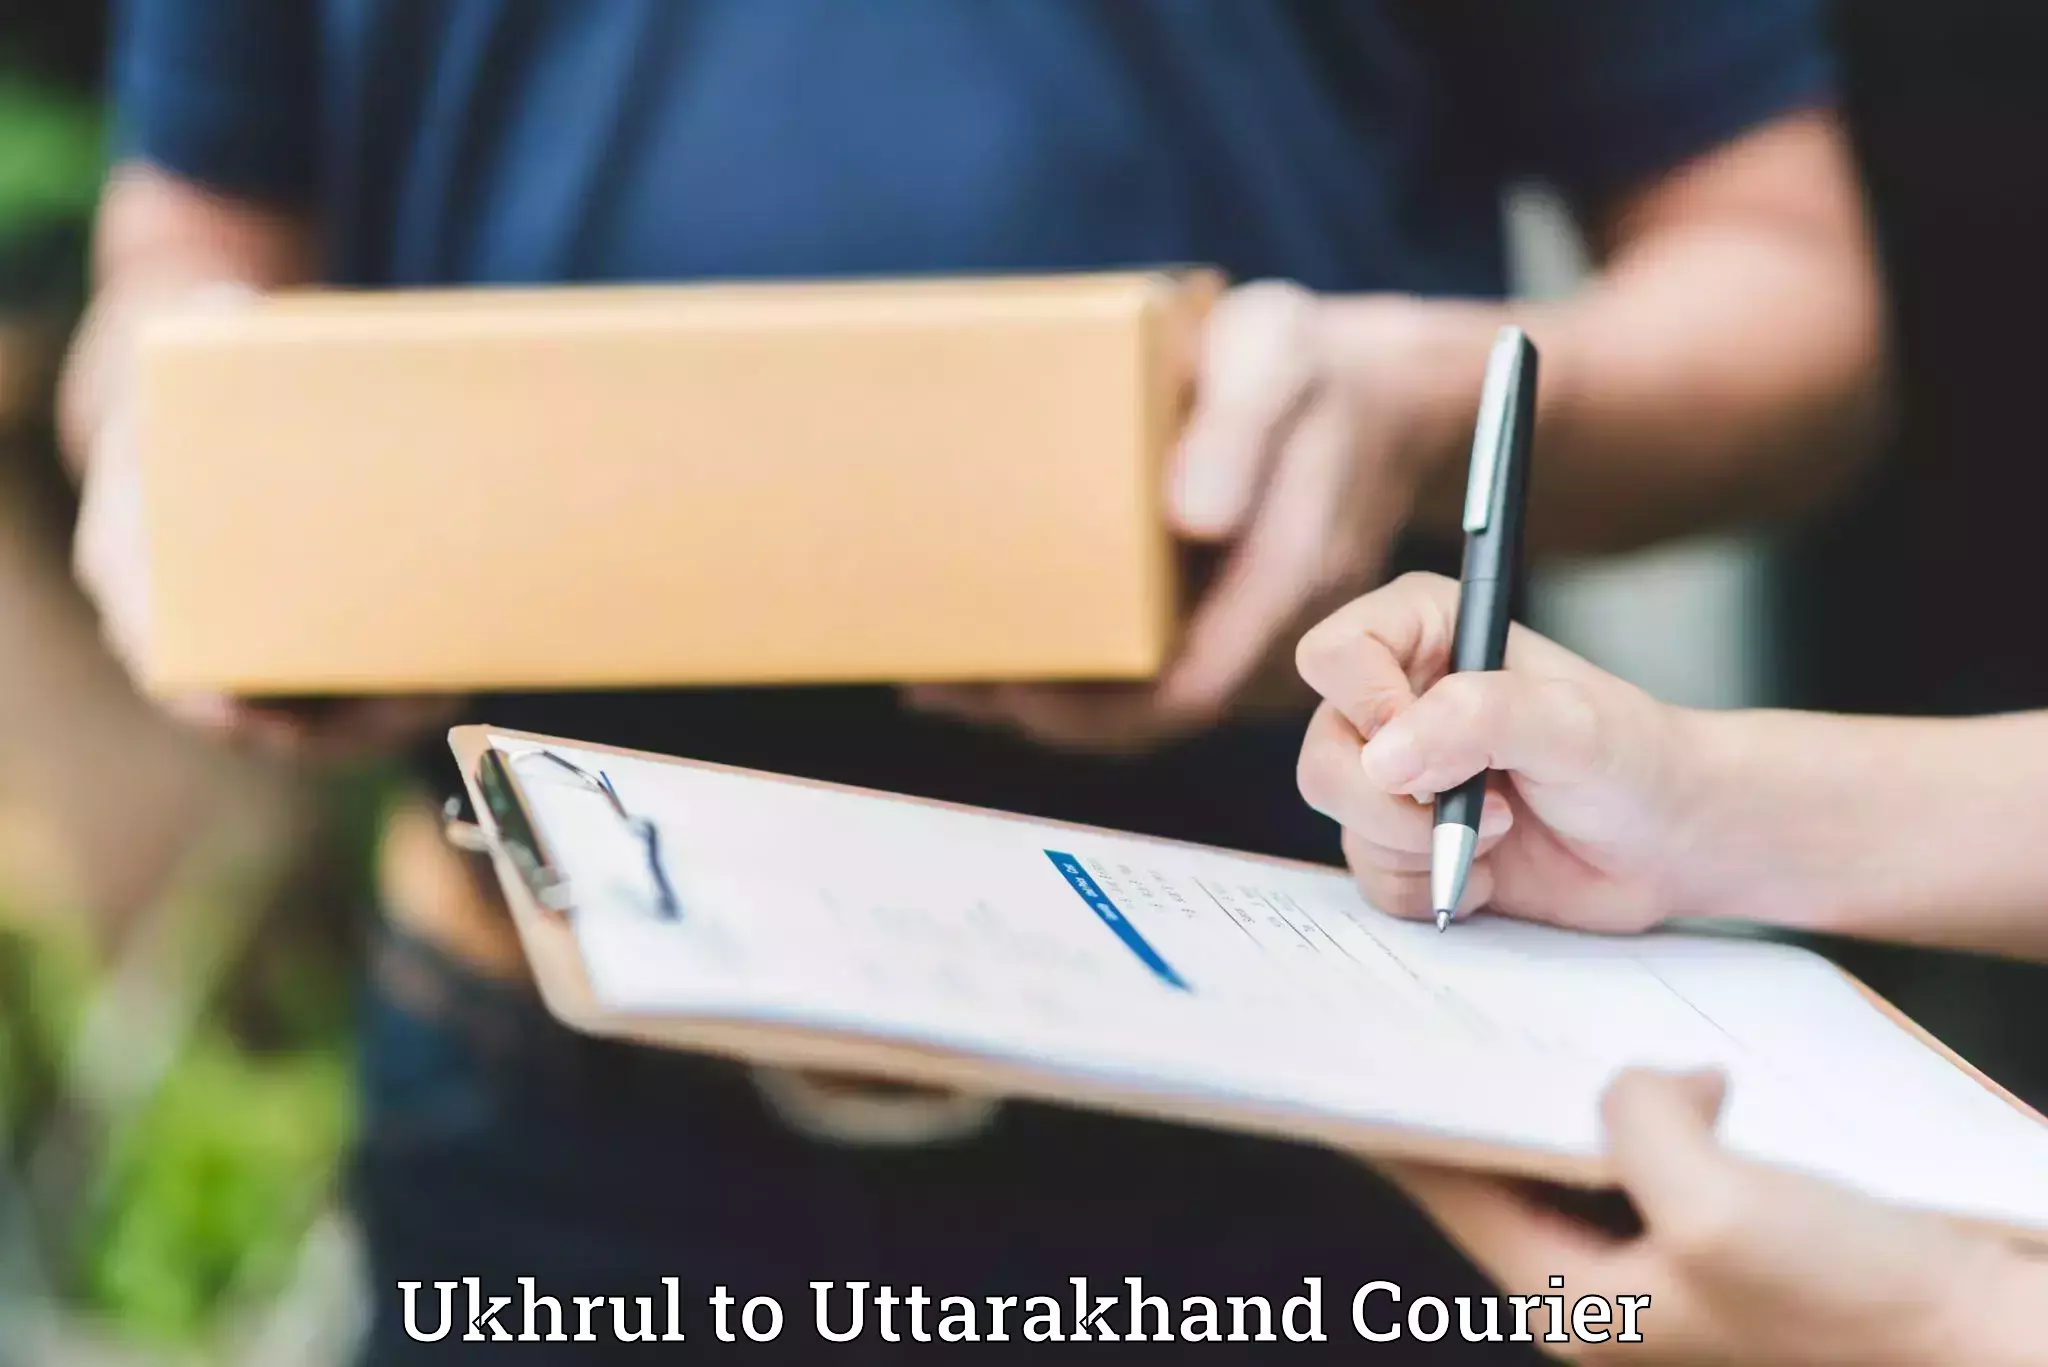 Baggage delivery optimization Ukhrul to Uttarakhand